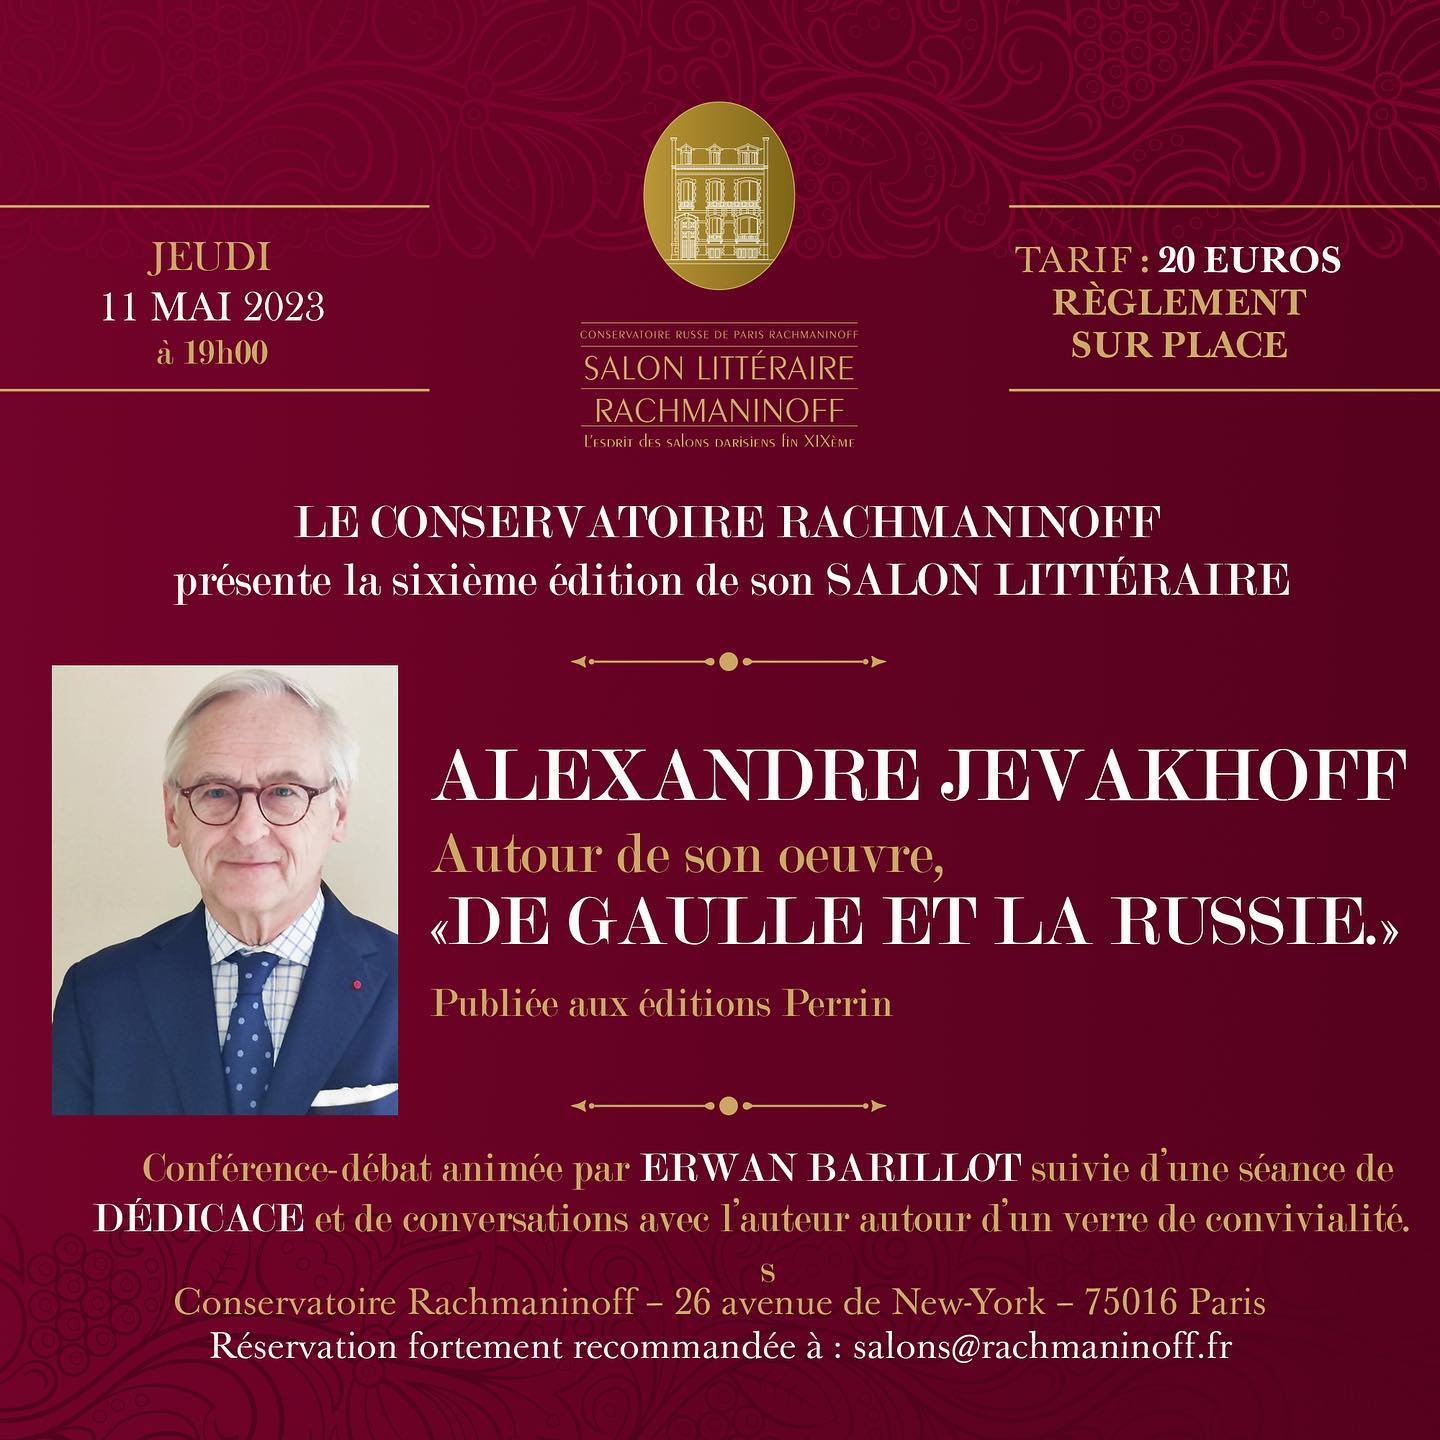 Историк Александр Жевахов представит свою работу “De Gaulle et la Russie” в рамках 6-го литературного салона в консерватории Рахманинова